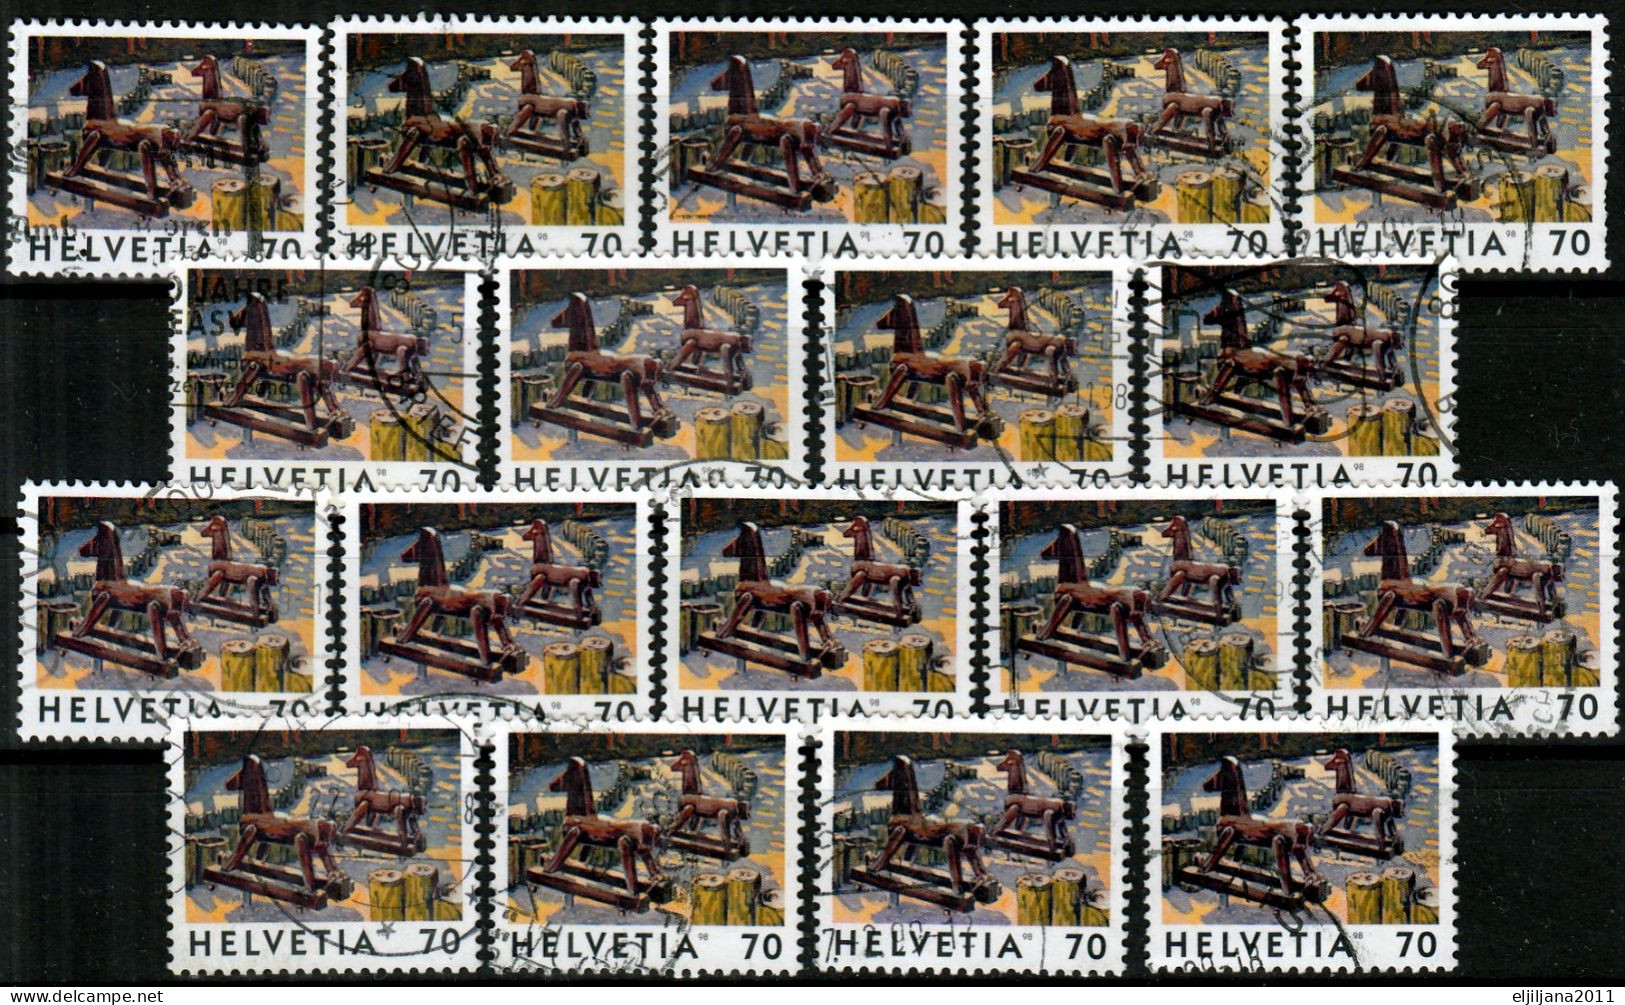 Switzerland / Helvetia / Schweiz / Suisse 1998 ⁕ Deux Chevaux Mi.1646 ⁕ 18v Used - Usados